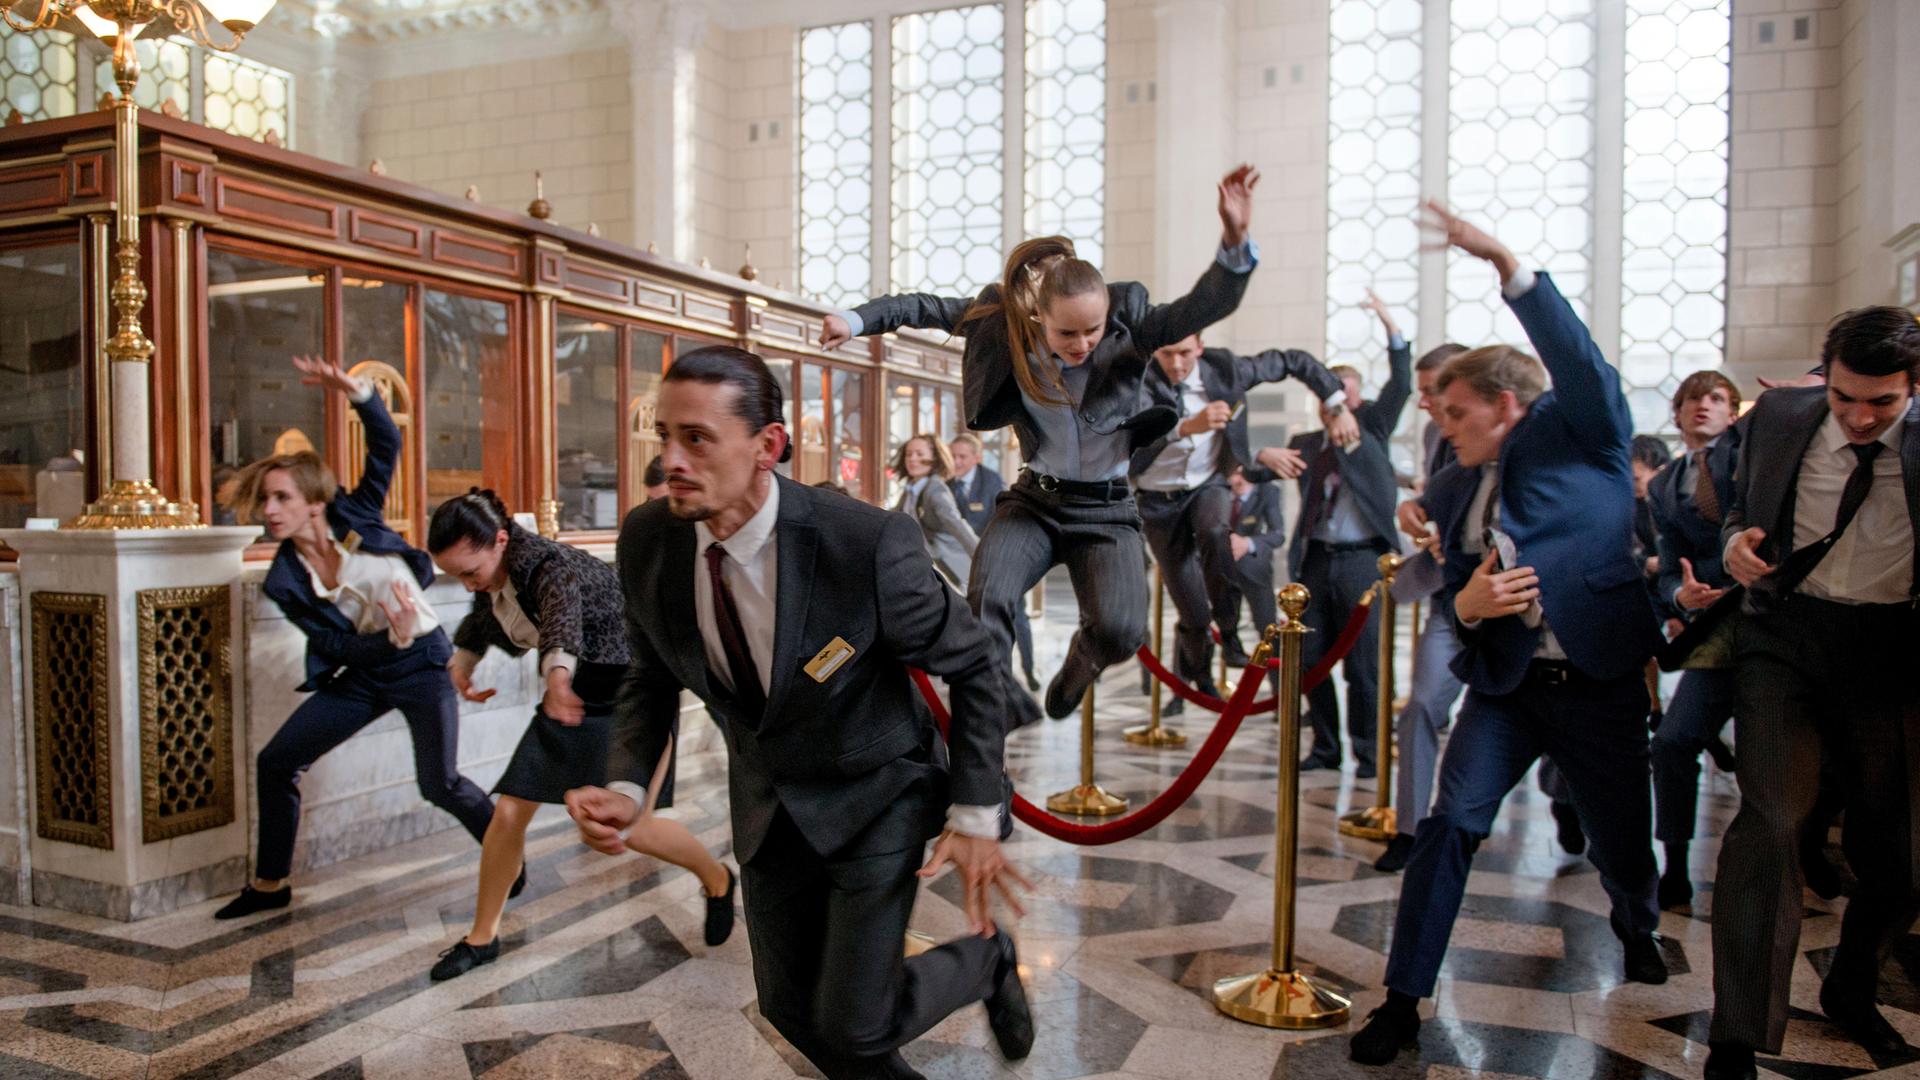 Ausschnitt aus der Videoinstallation "EUPHORIA": Bankangestellte tanzen wild im Foyer der Bank.